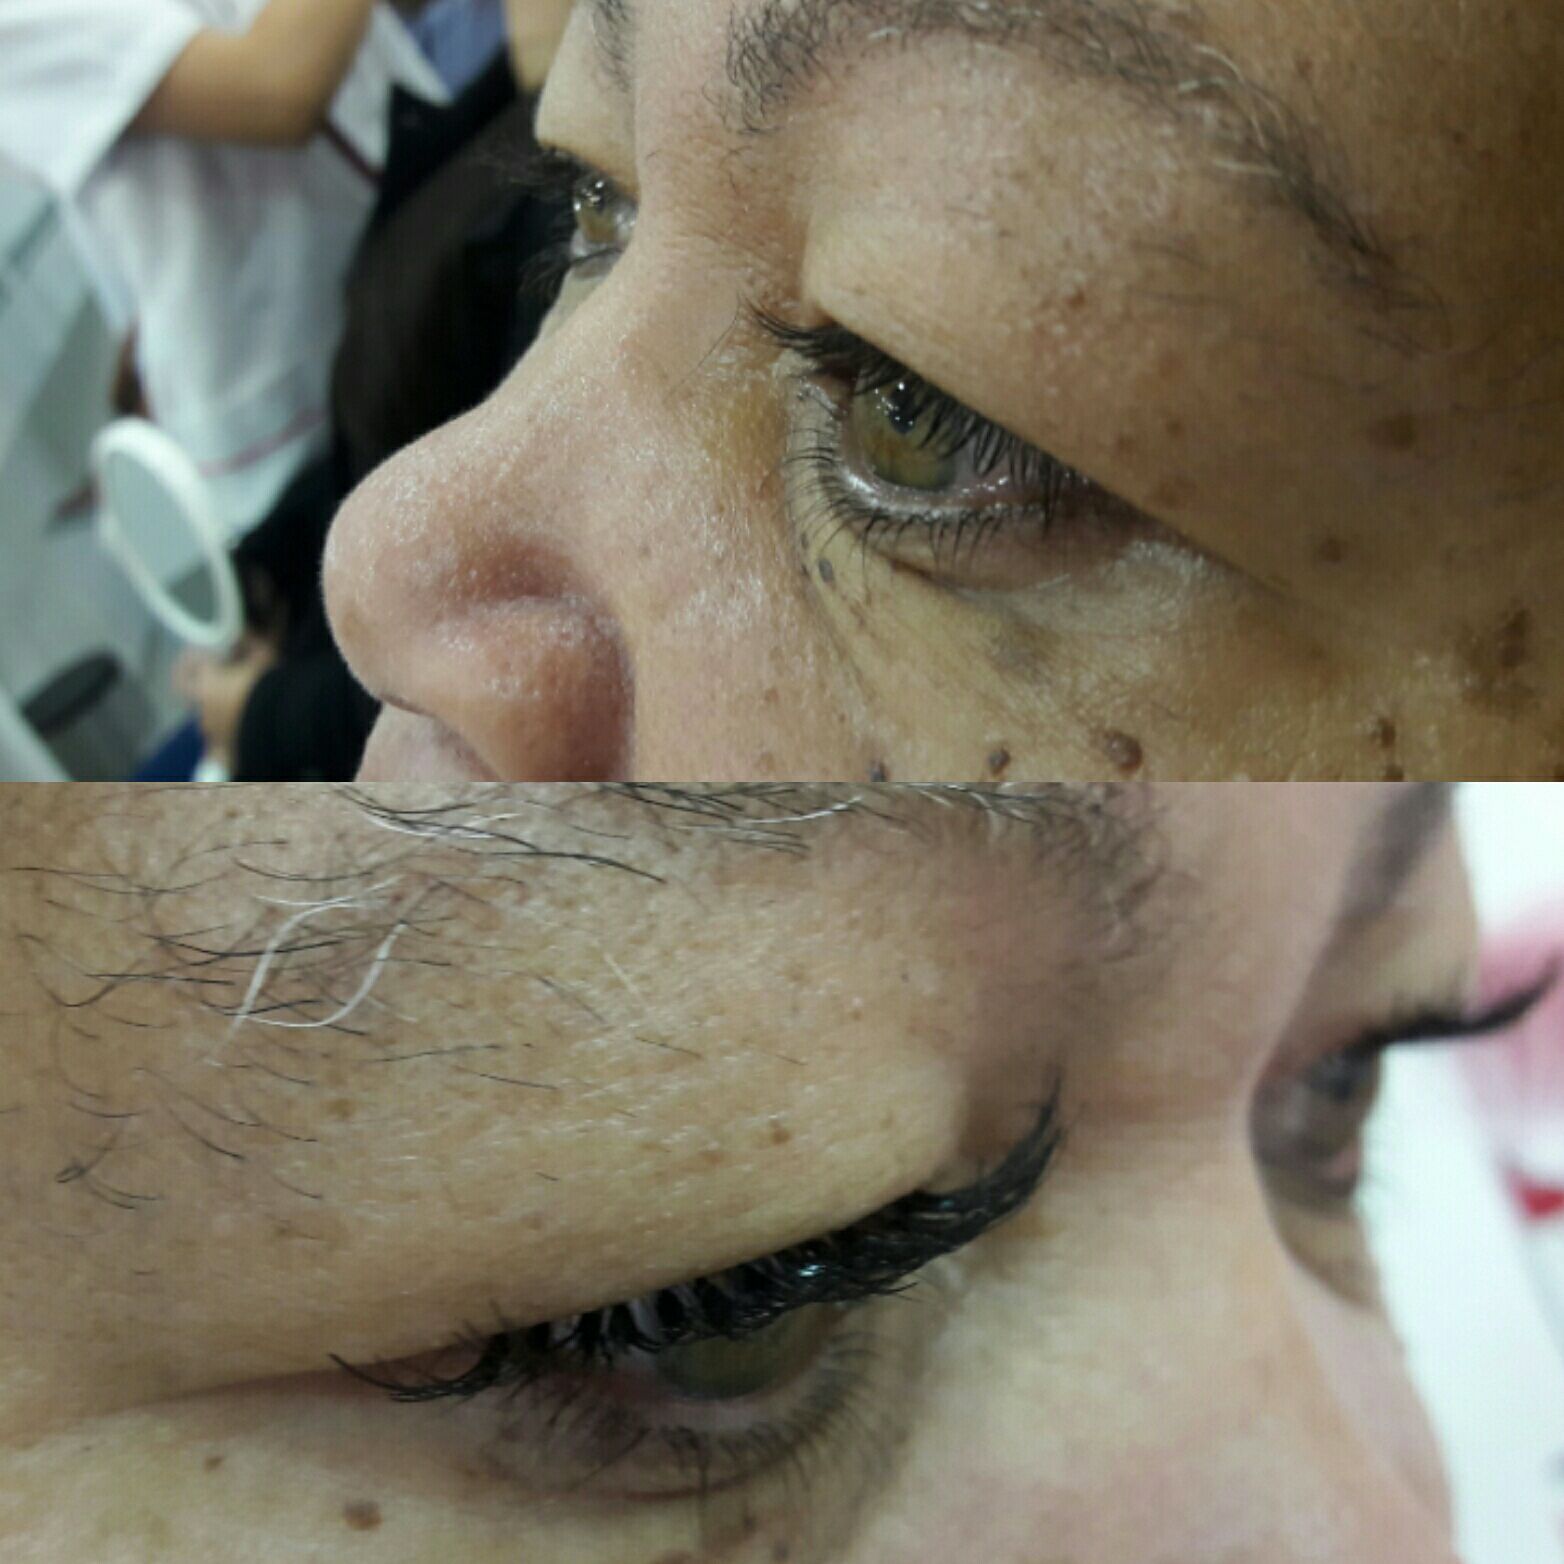 Alongamento de cílios tufinho estética depilador(a) assistente esteticista designer de sobrancelhas maquiador(a) consultor(a) recepcionista vendedor(a)